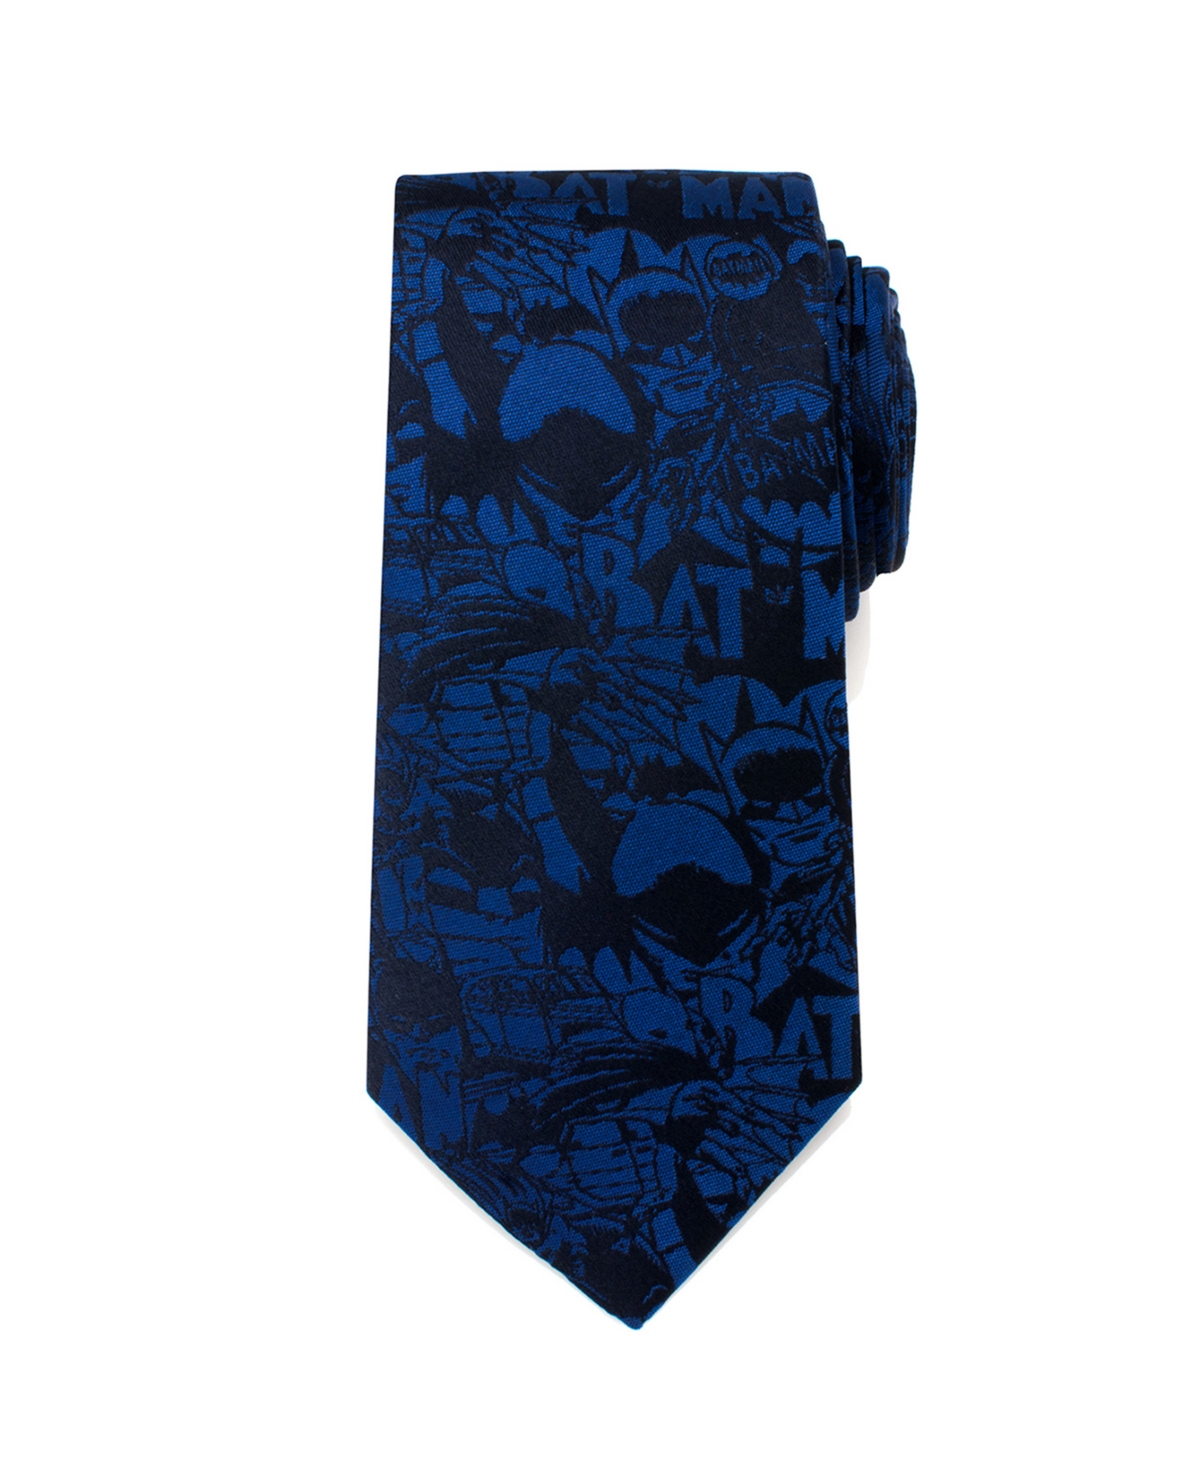 Batman Comic Men's Tie - Blue